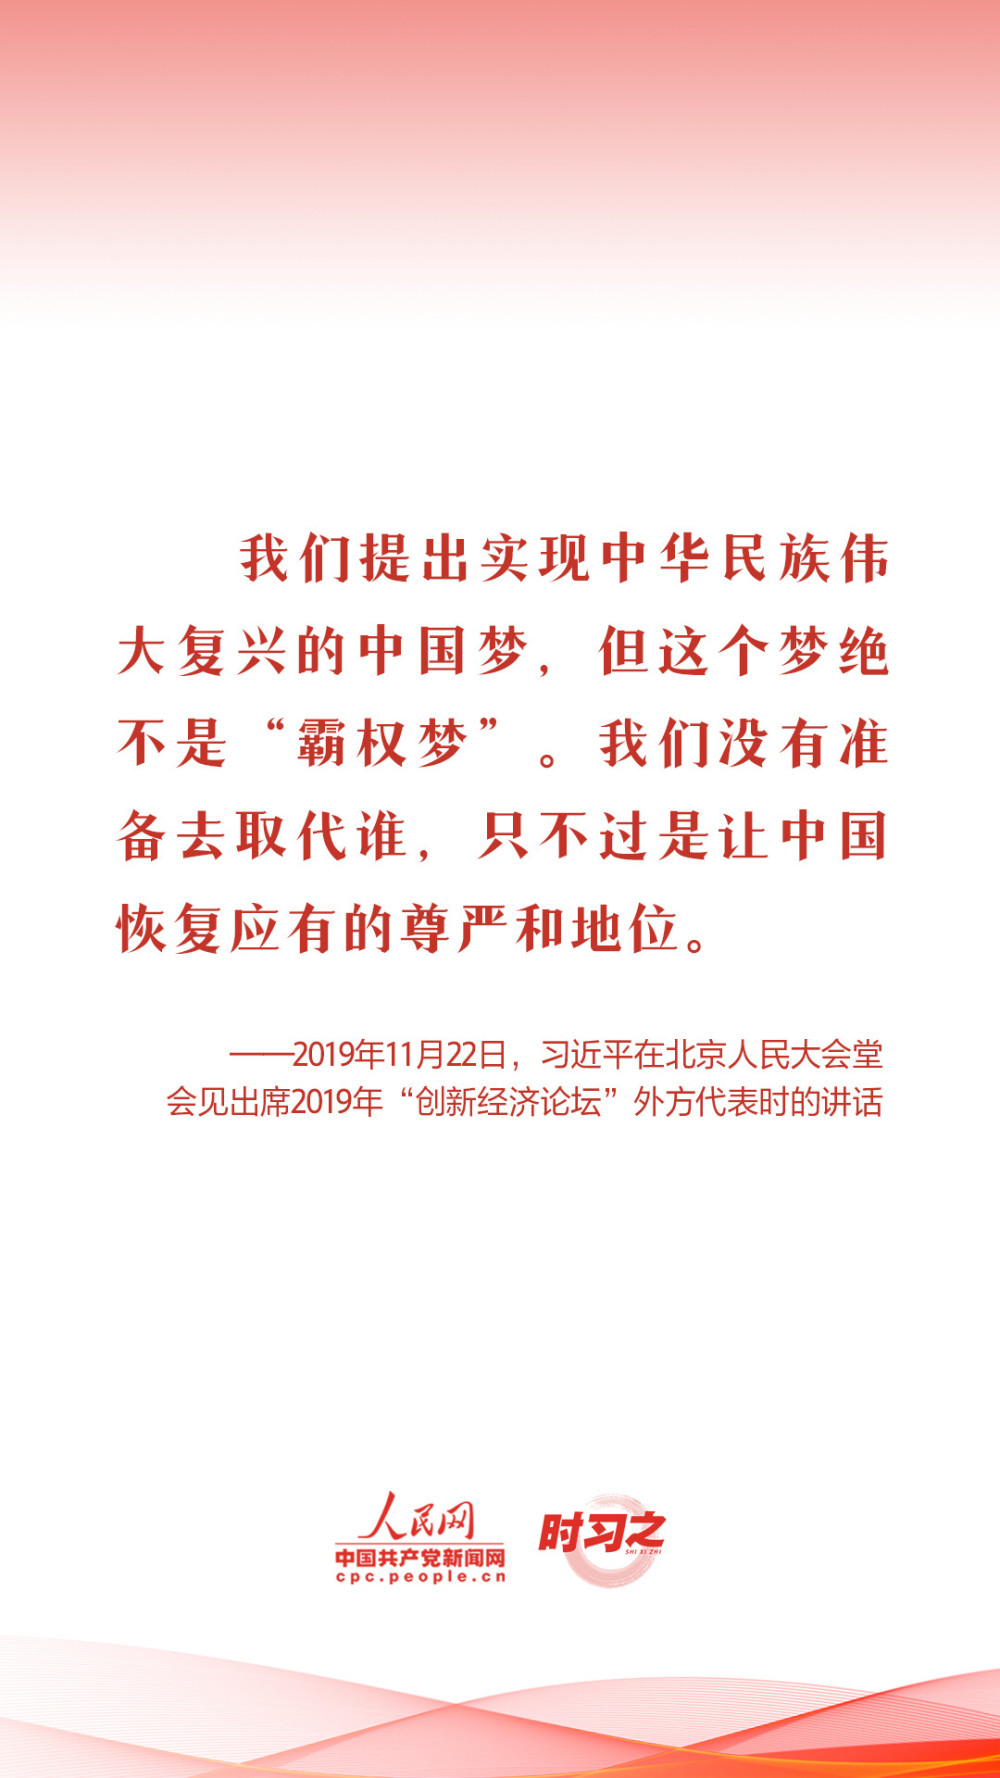 北京11月27日0-15时新增本土感染者1781例猪肉锅贴的做法窍门